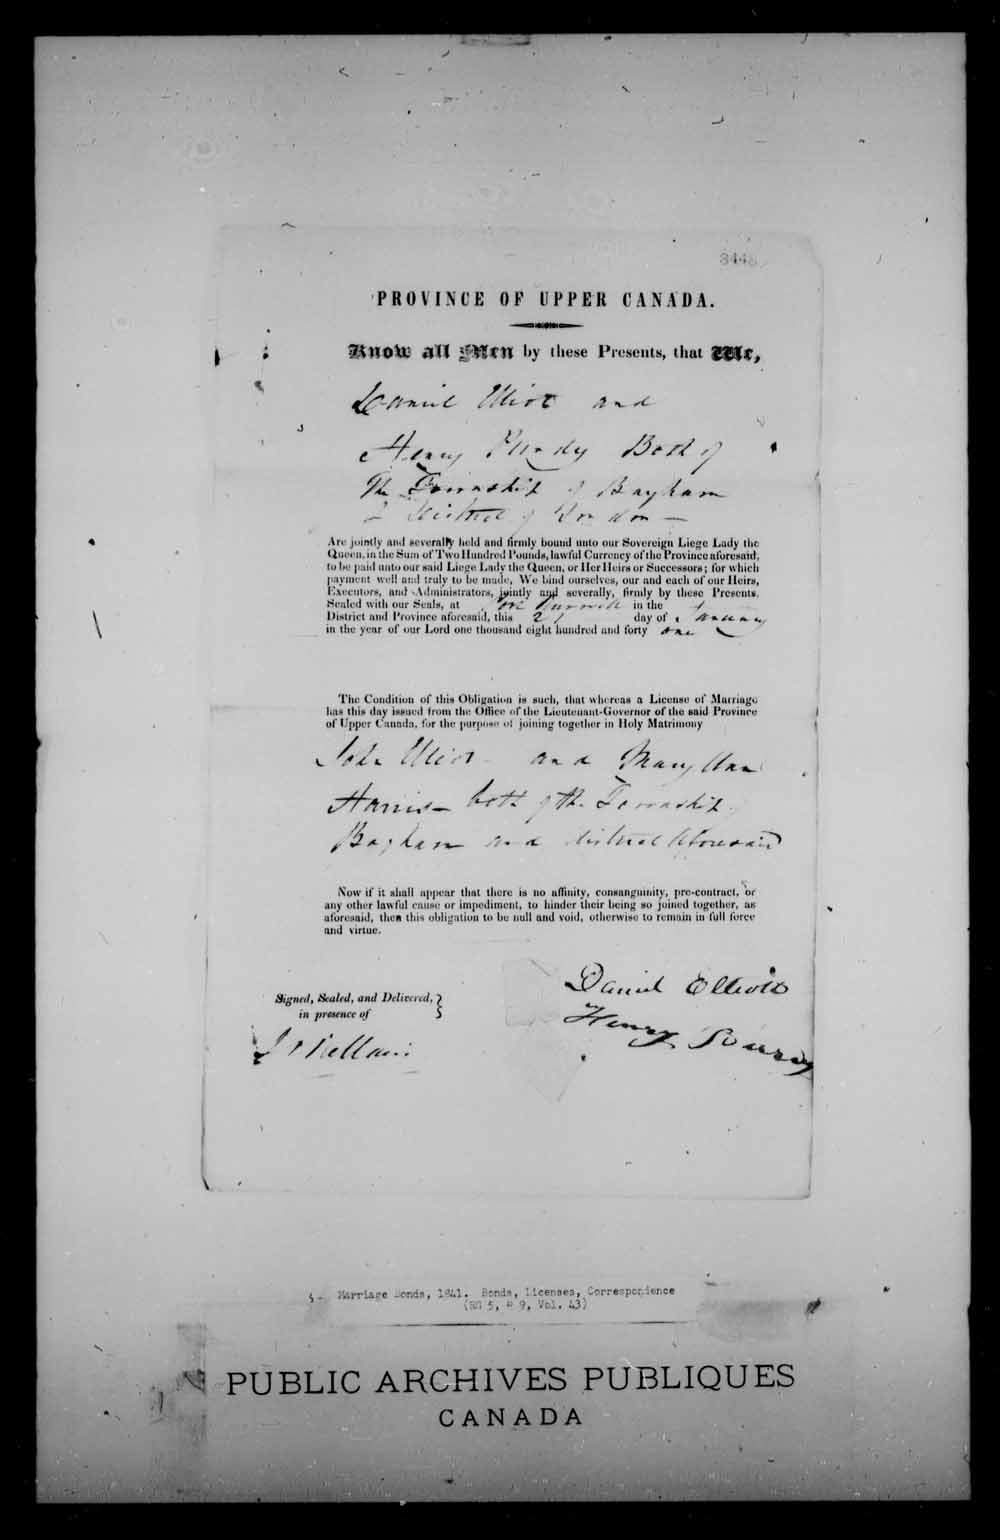 Page numérisé de Cautionnements de mariages pour le Haut-Canada et le Bas-Canada (1779-1865) pour l'image numéro: e008234894